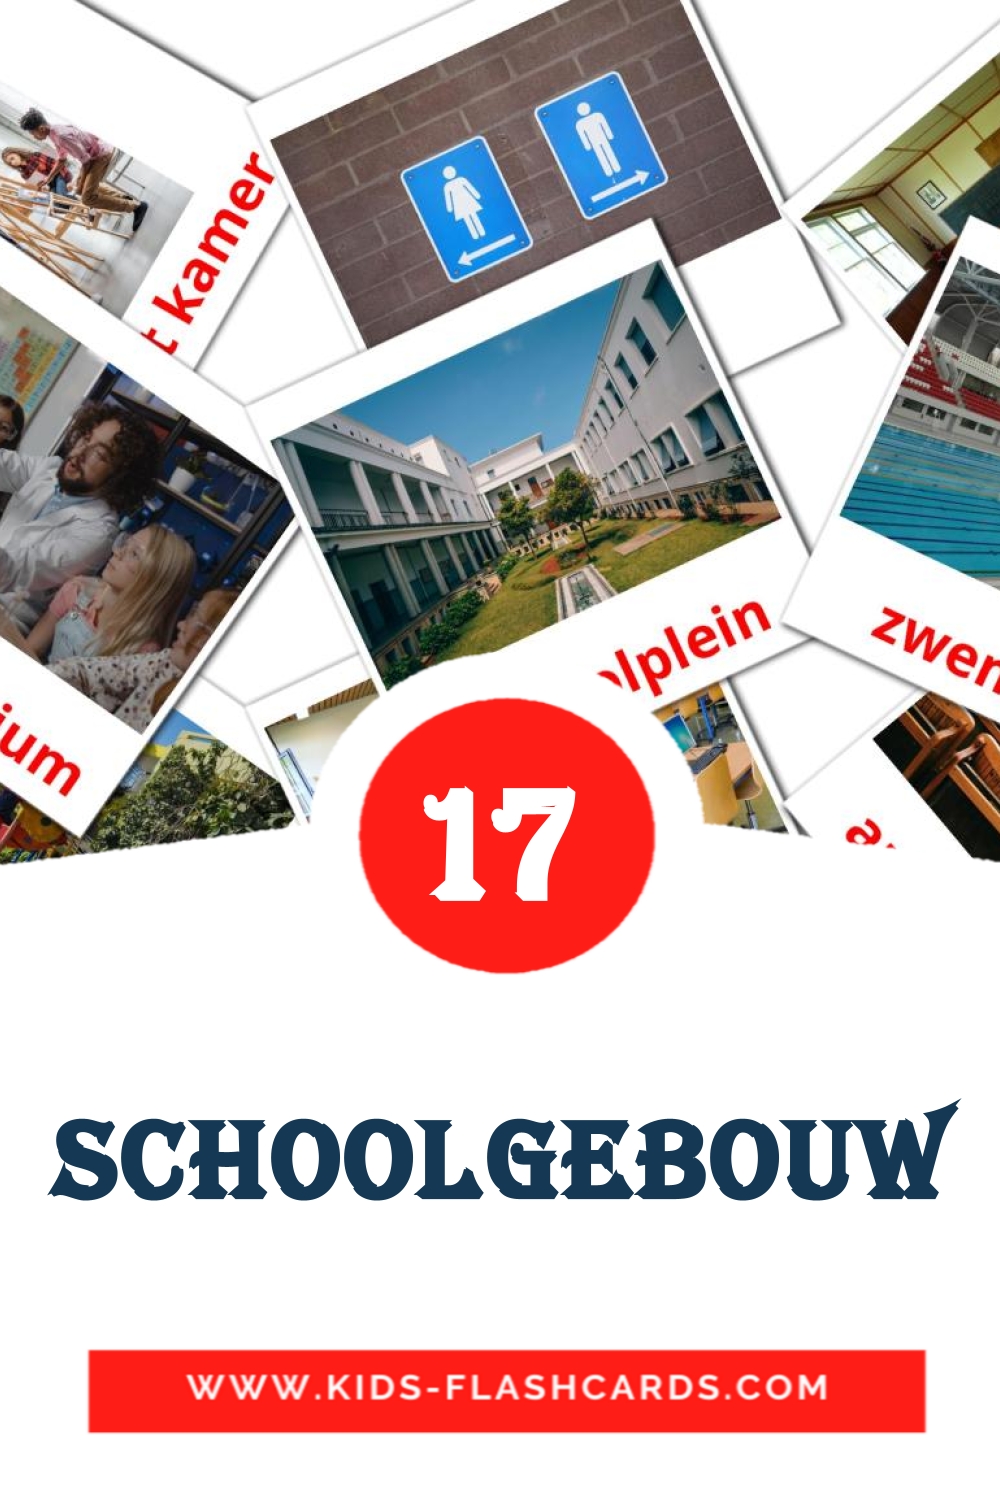 17 tarjetas didacticas de Schoolgebouw para el jardín de infancia en holandés